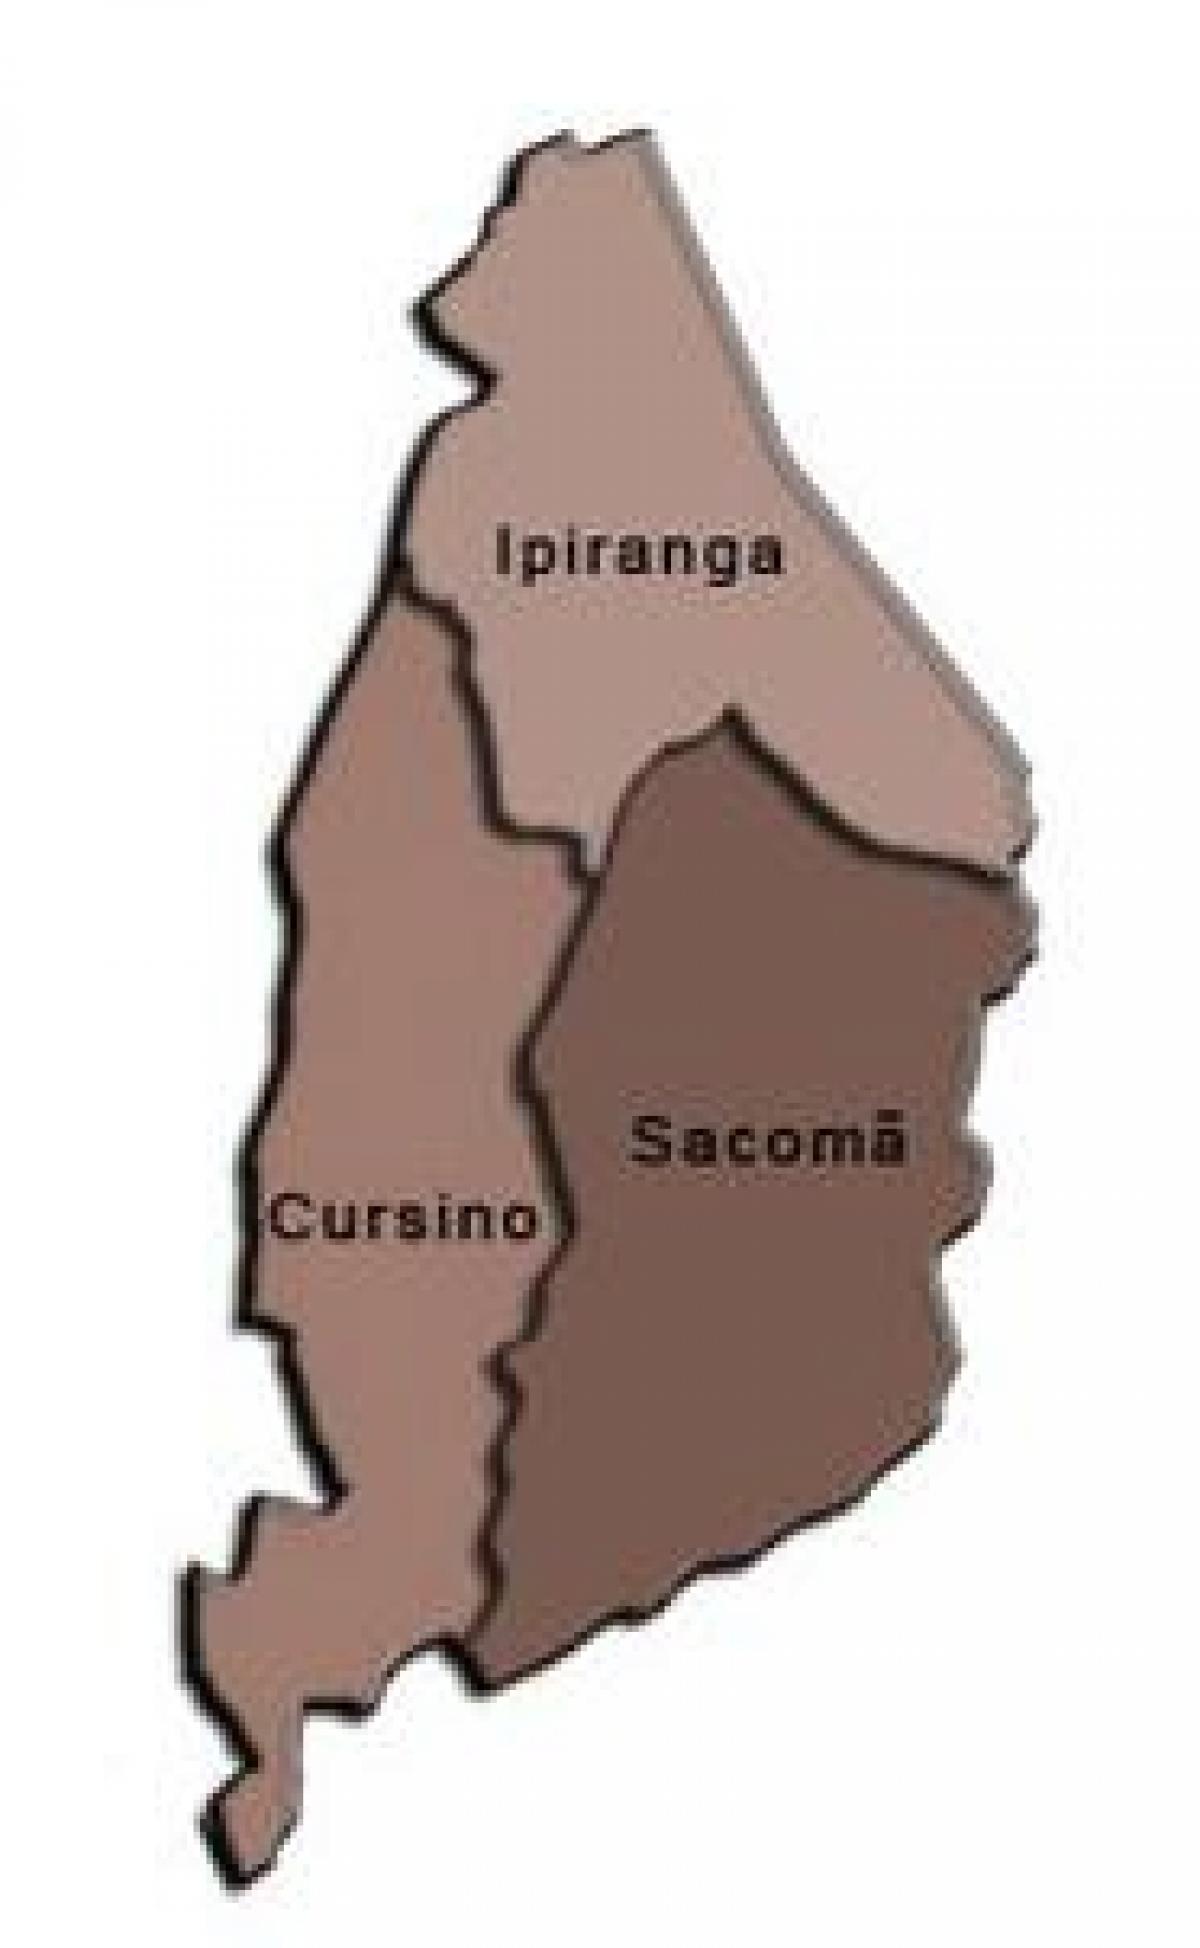 แผนที่ของ Ipiranga รายการย่อยขอ prefecture